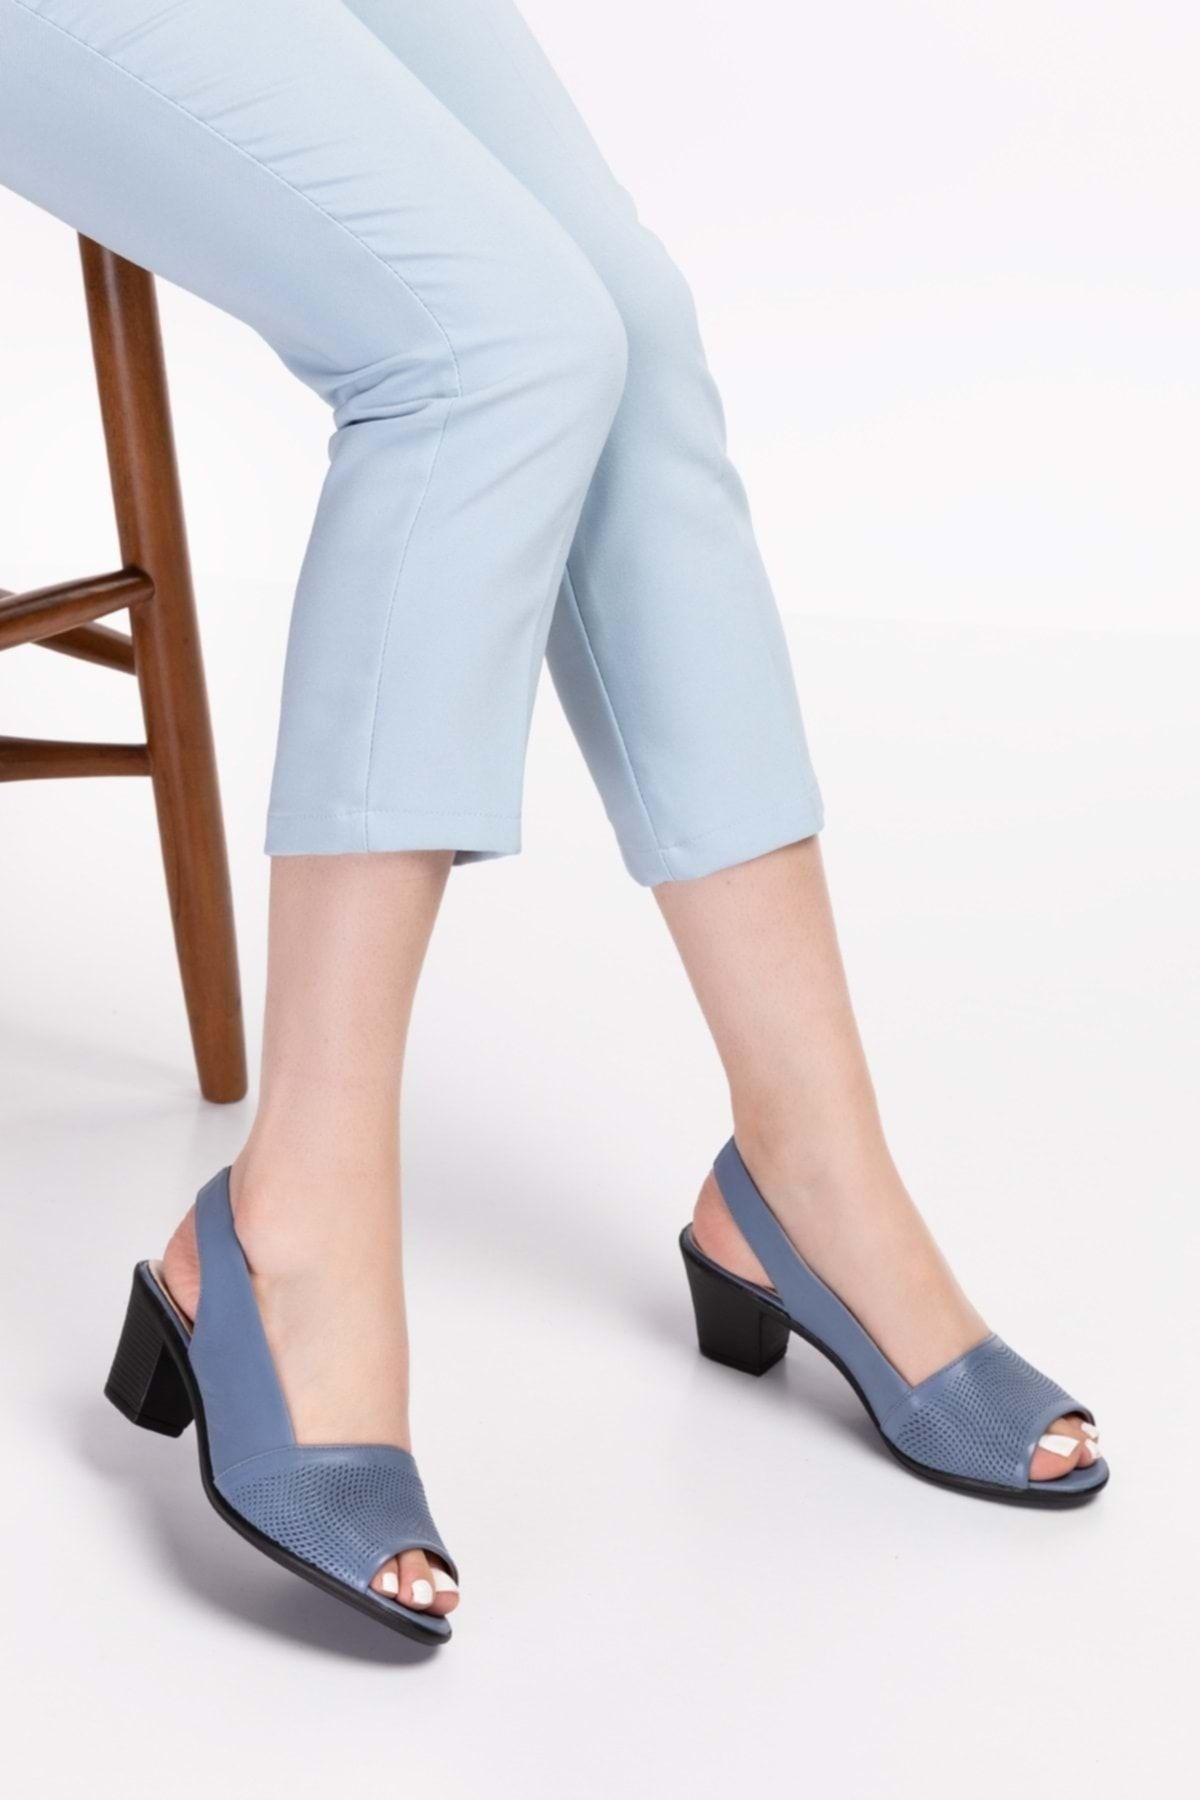 Gondol Kadın Hakiki Deri Klasik Topuklu Ayakkabı Vdt.262 - Mavi - 37